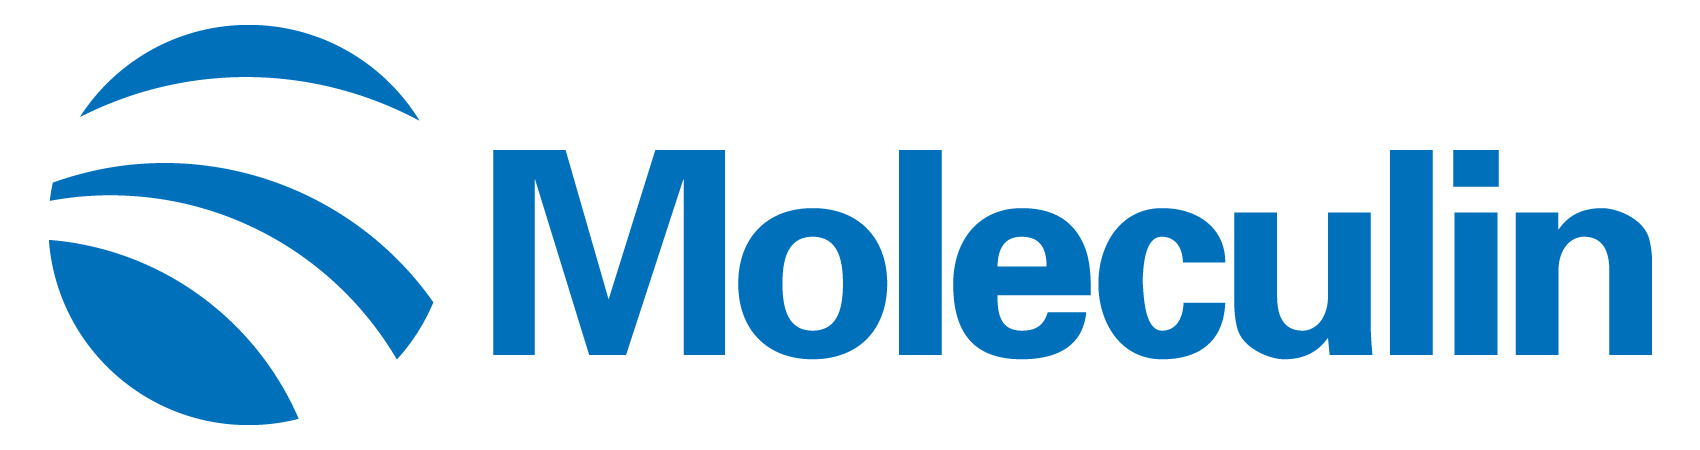 moleculin-logo_horiza31.jpg